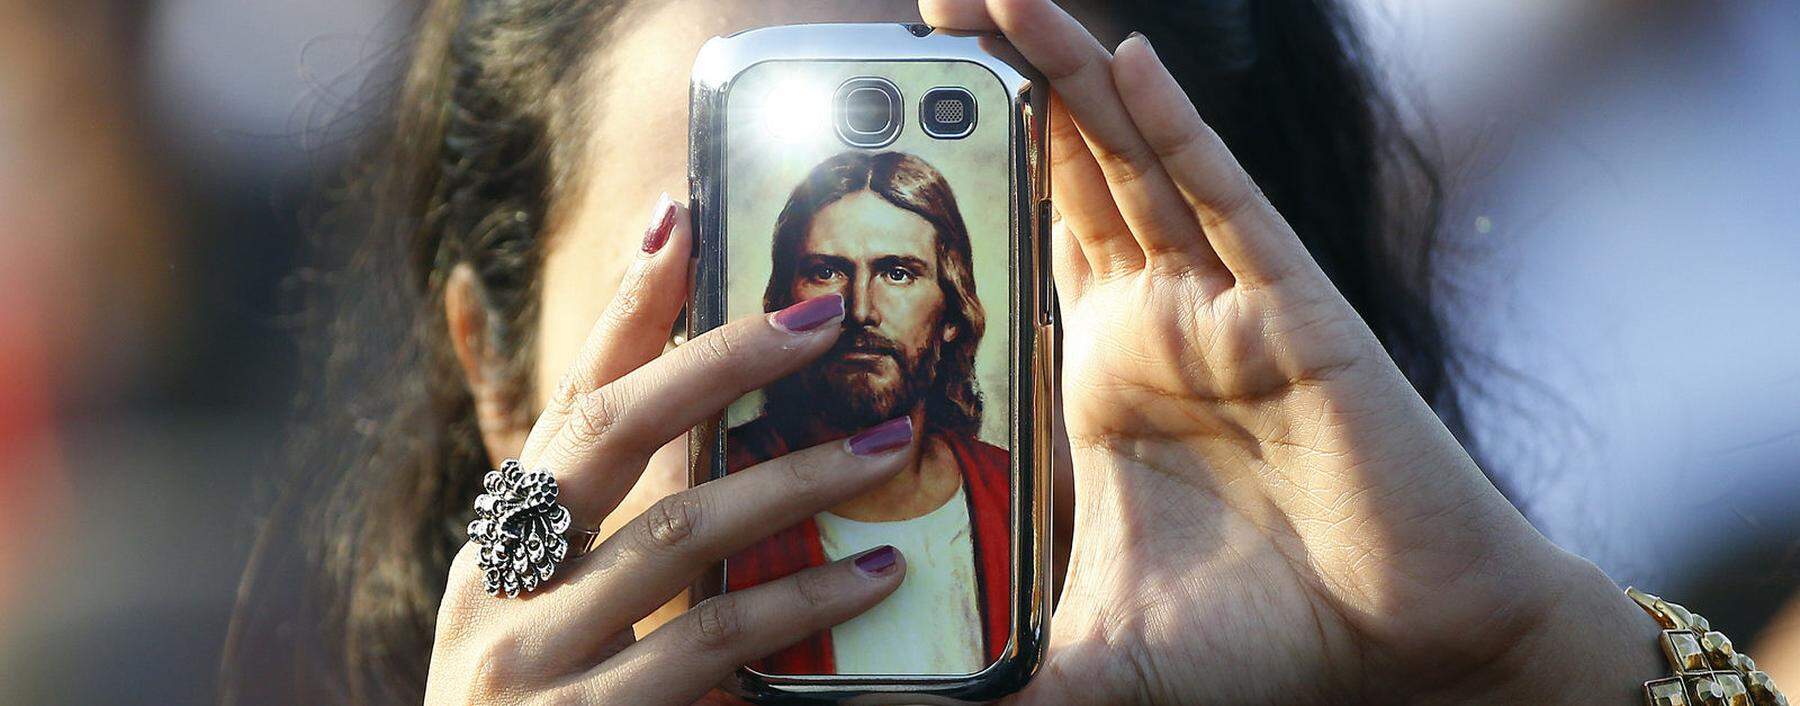 Ein Wiener Forschungsteam untersucht, wie junge Menschen ihre Religiosität im Alltag online und offline leben.